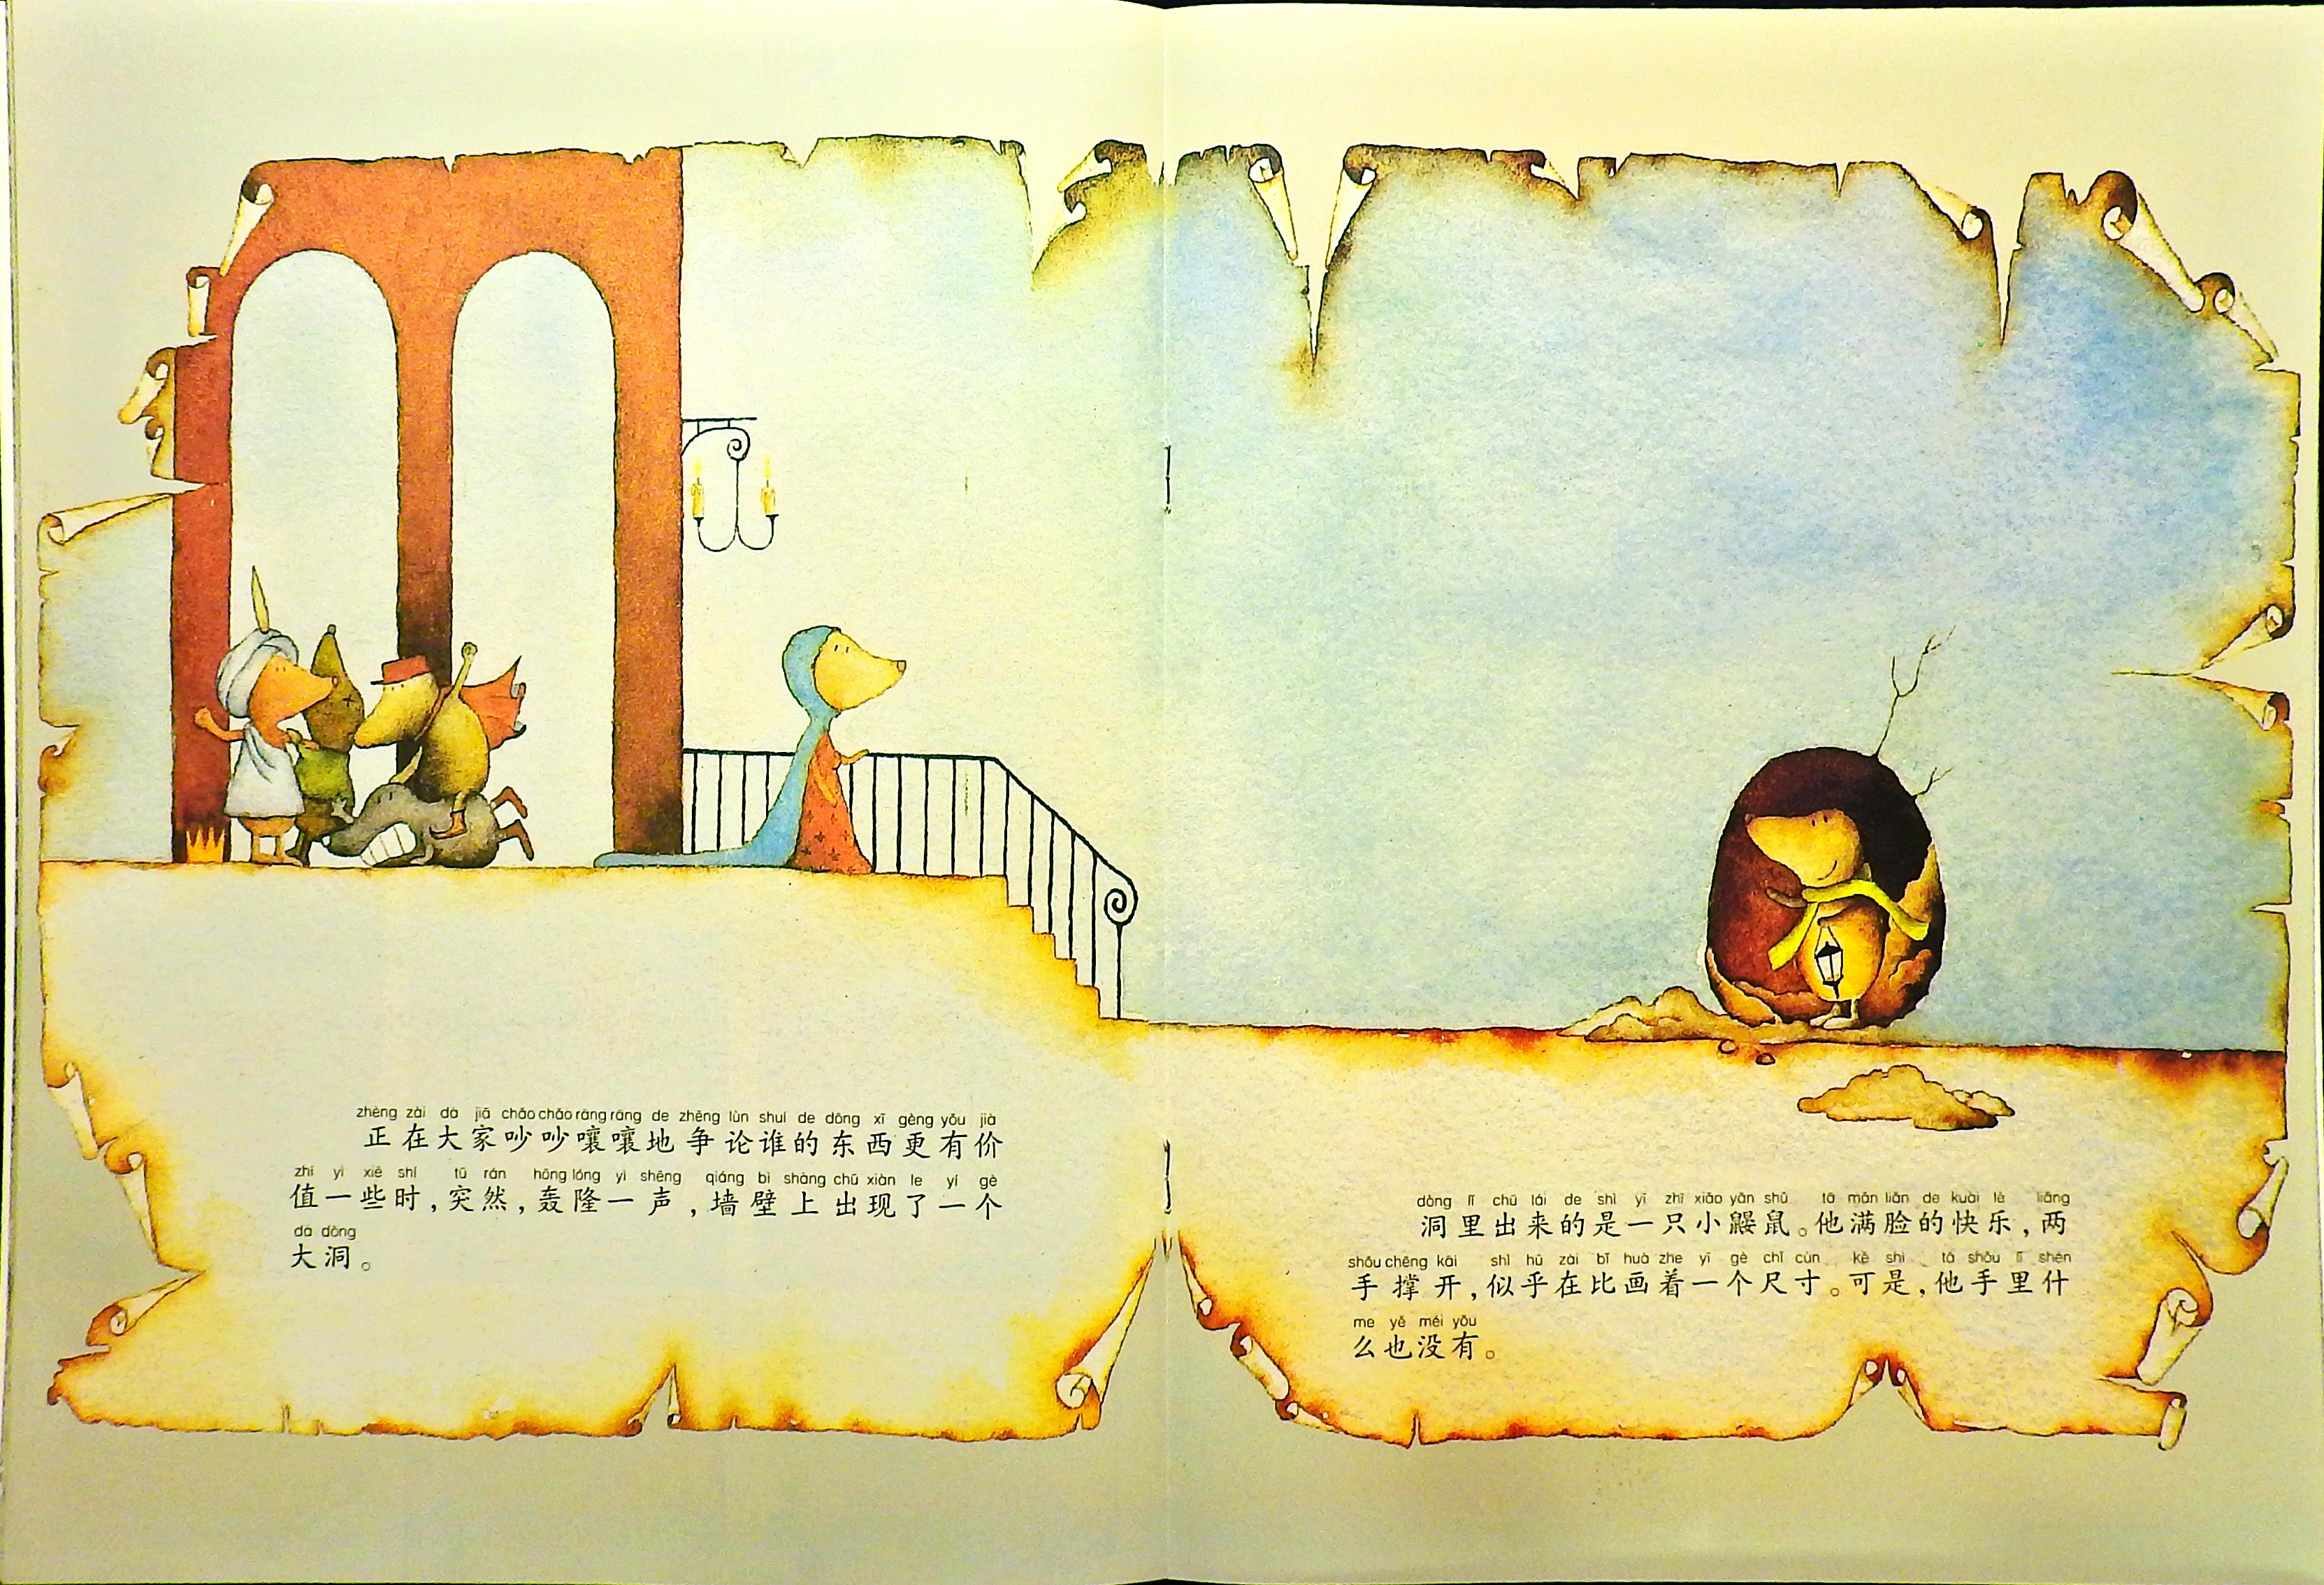 小鼹鼠的土豆 (10),绘本,绘本故事,绘本阅读,故事书,童书,图画书,课外阅读